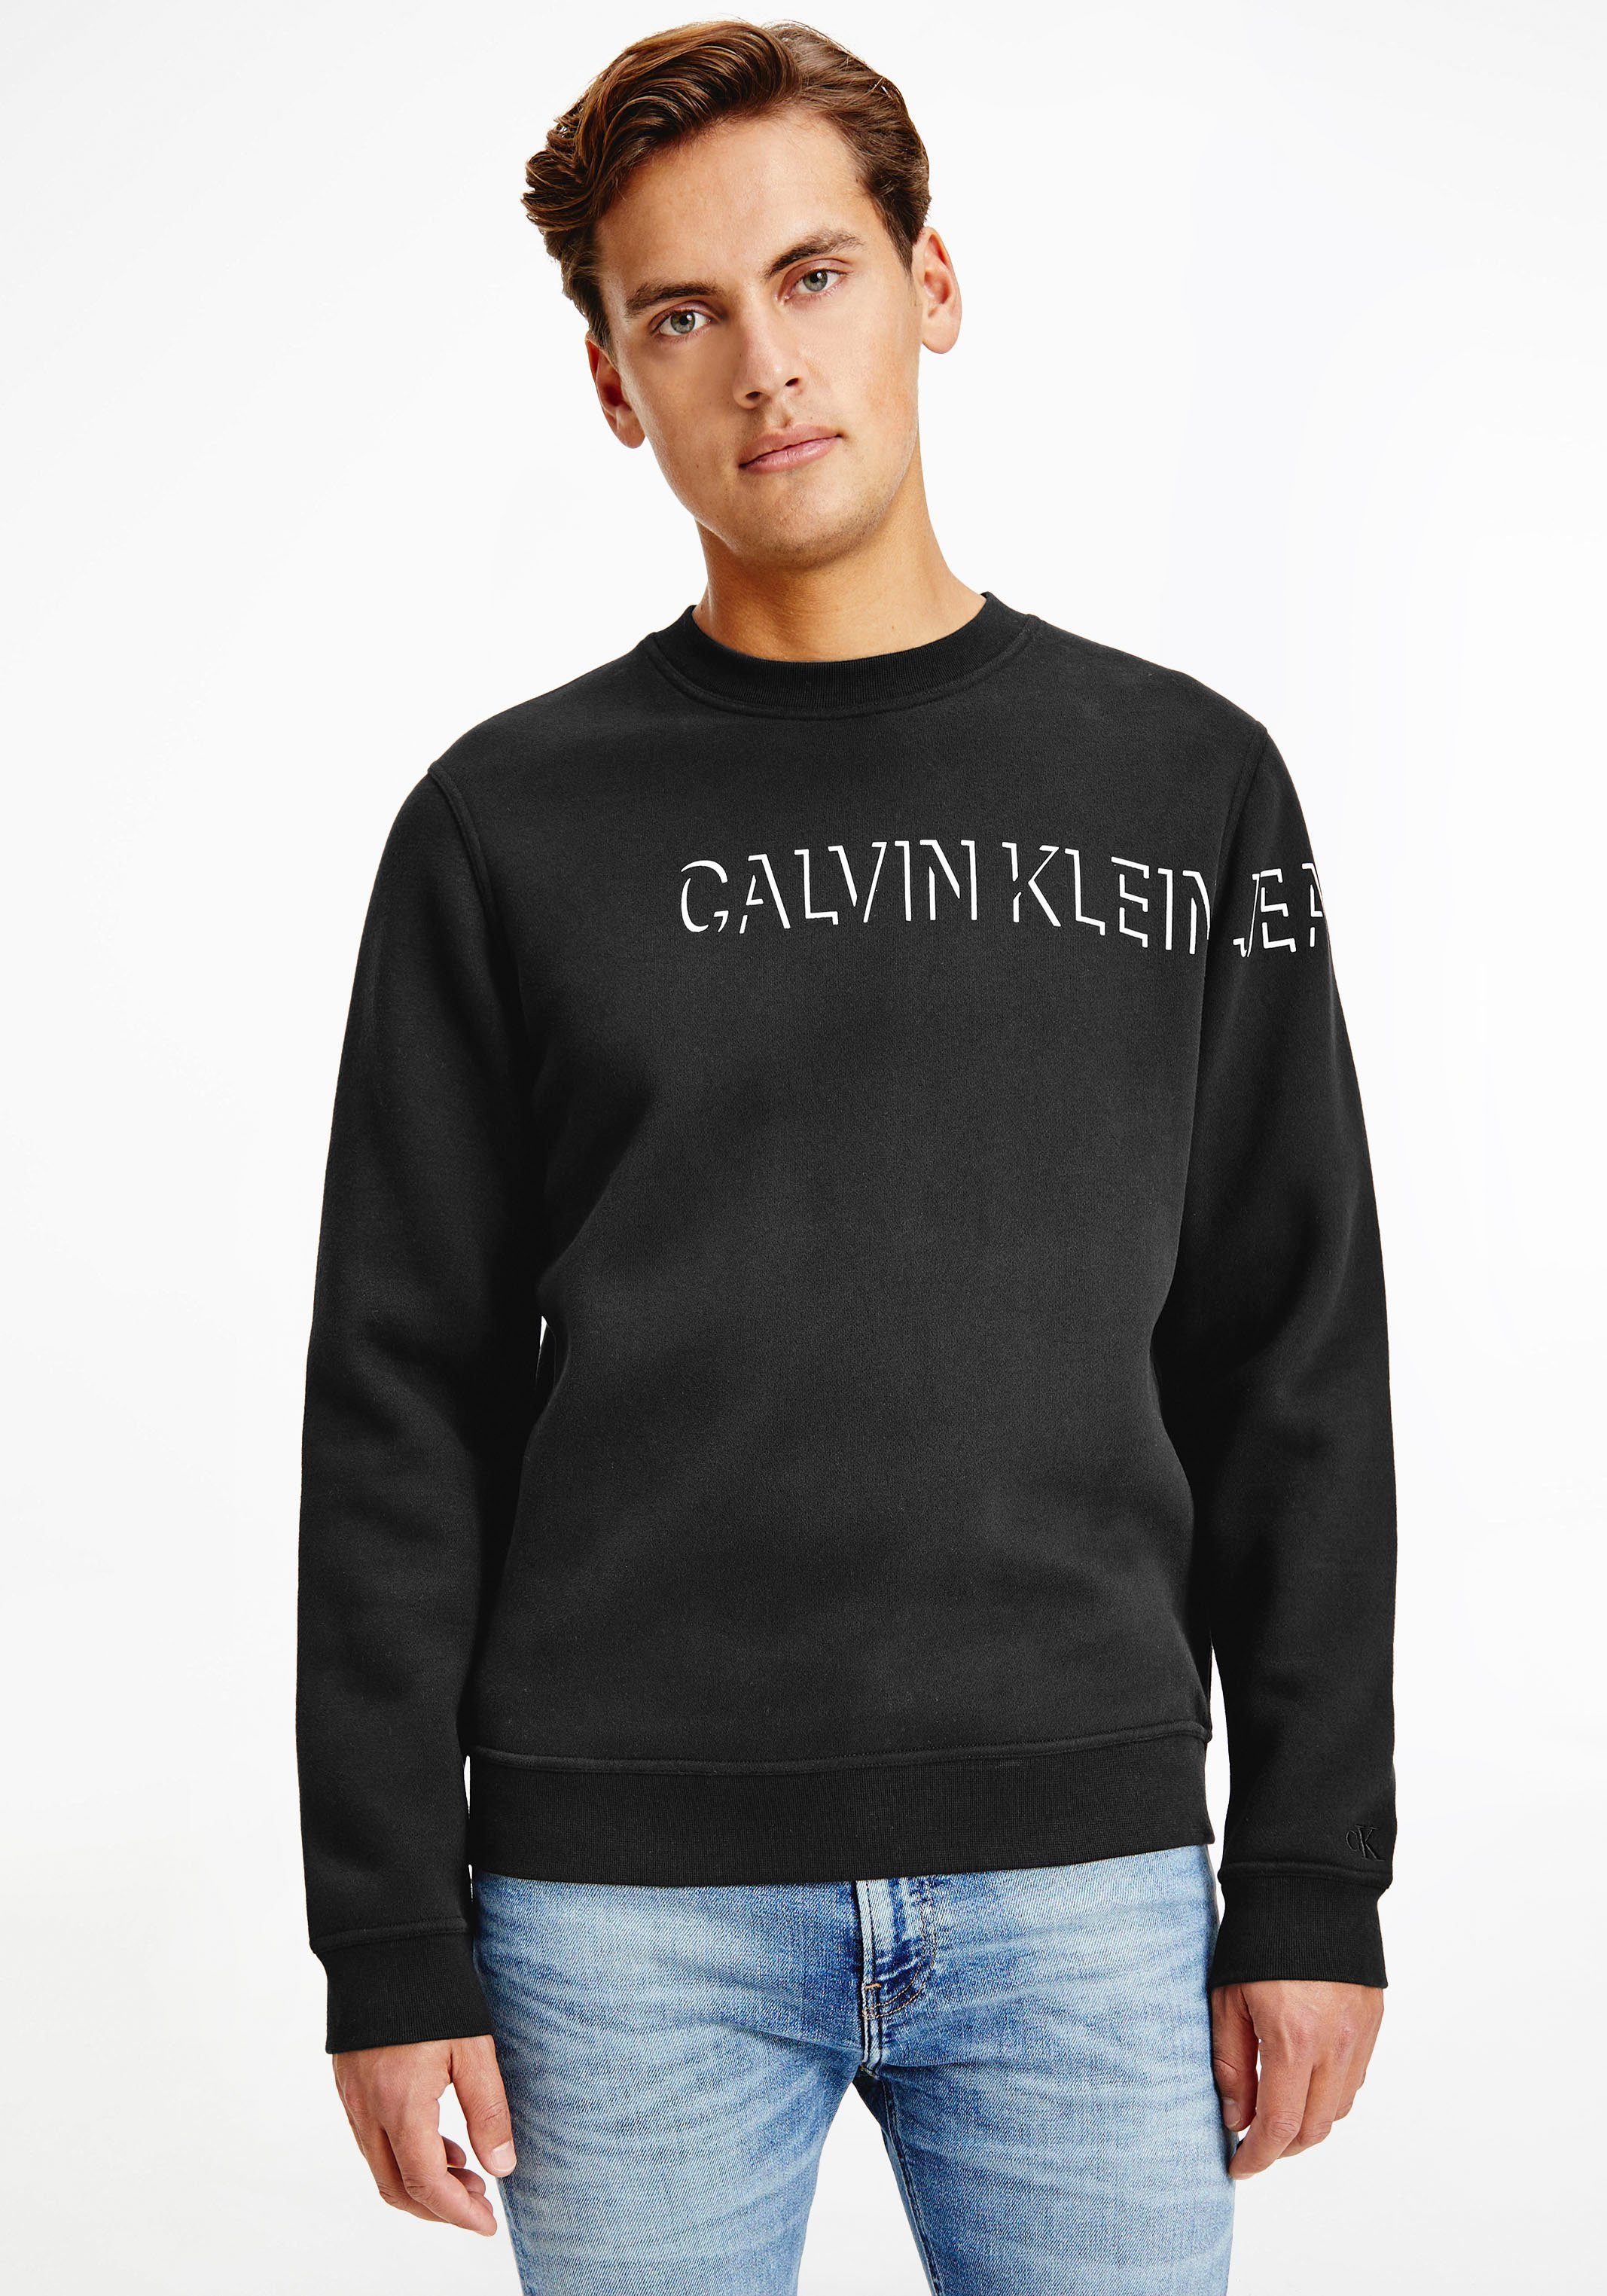 Calvin Klein Herrenmode & Herrenbekleidung online kaufen | OTTO